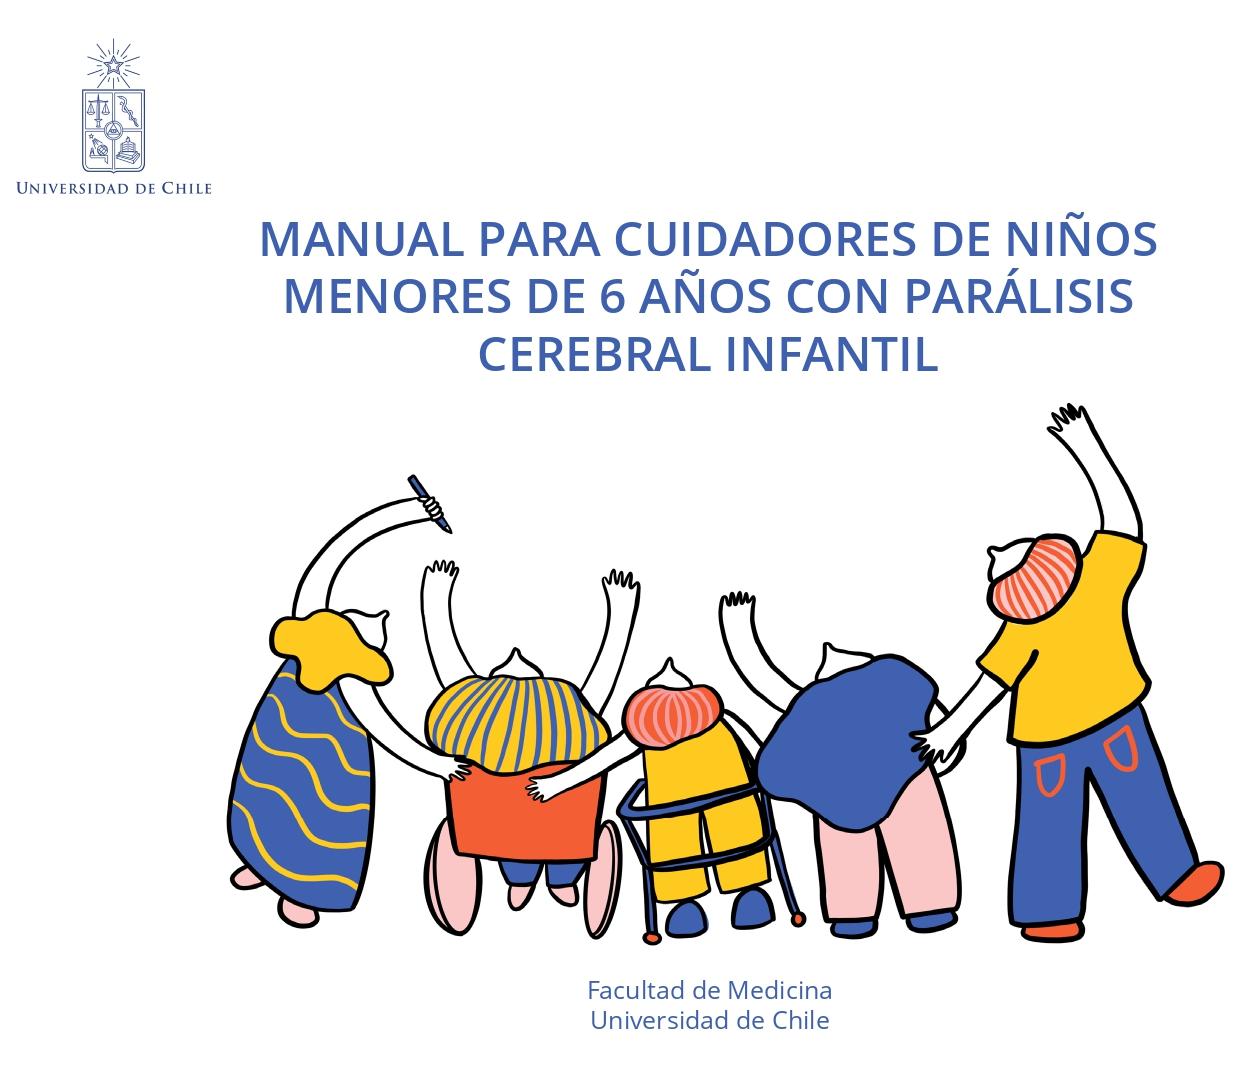 Manual para cuidadores de niños menores de 6 años con parálisis cerebral infantil (2021)